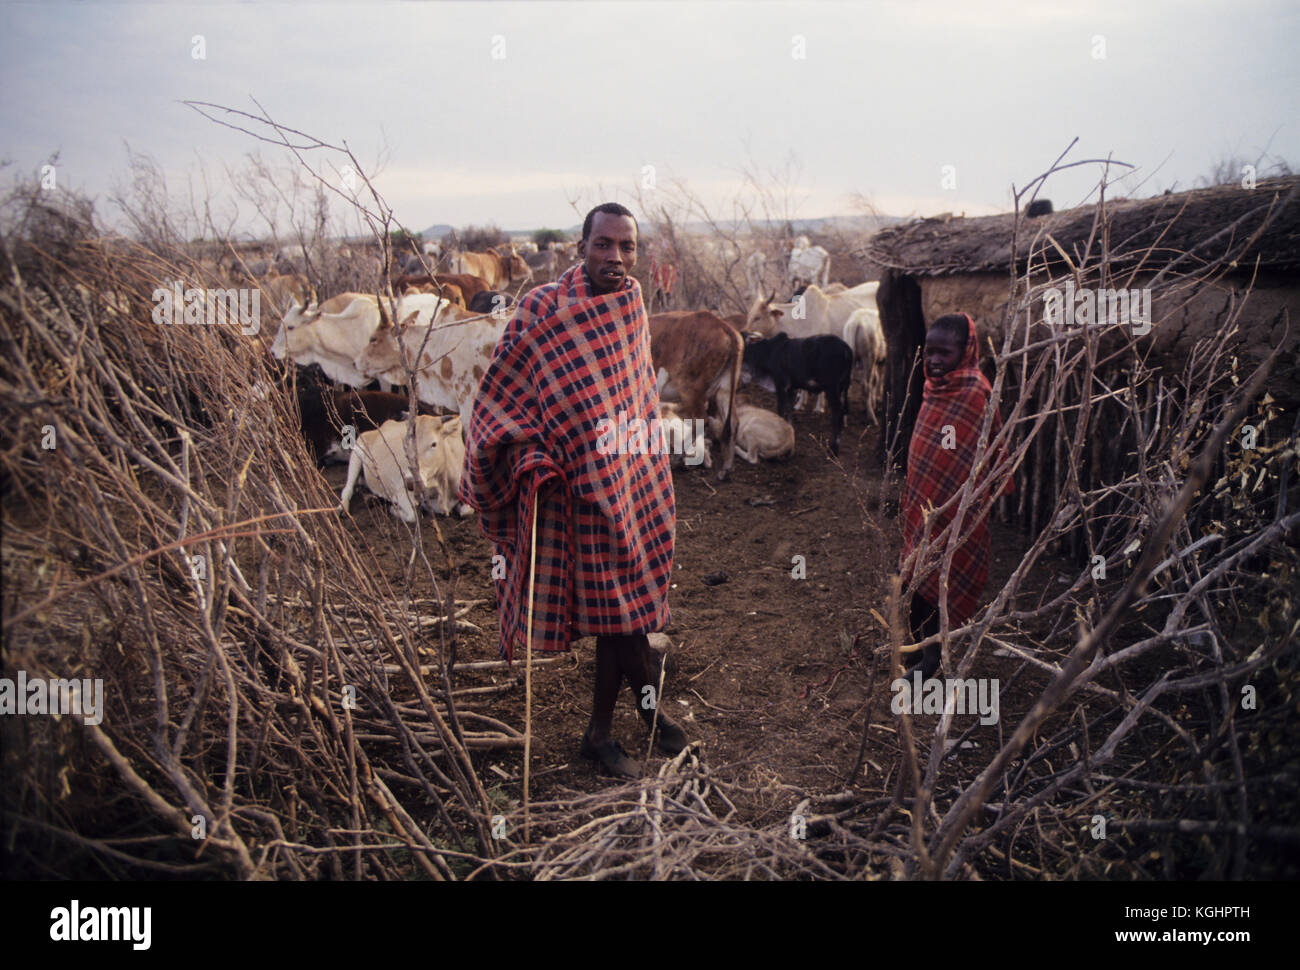 D'une tribu Masai dans sa manyatta près de Masai Mara. Masais sont peut-être le plus célèbre de tous les tribus africaines, vivant dans les grandes plaines du Kenya Banque D'Images